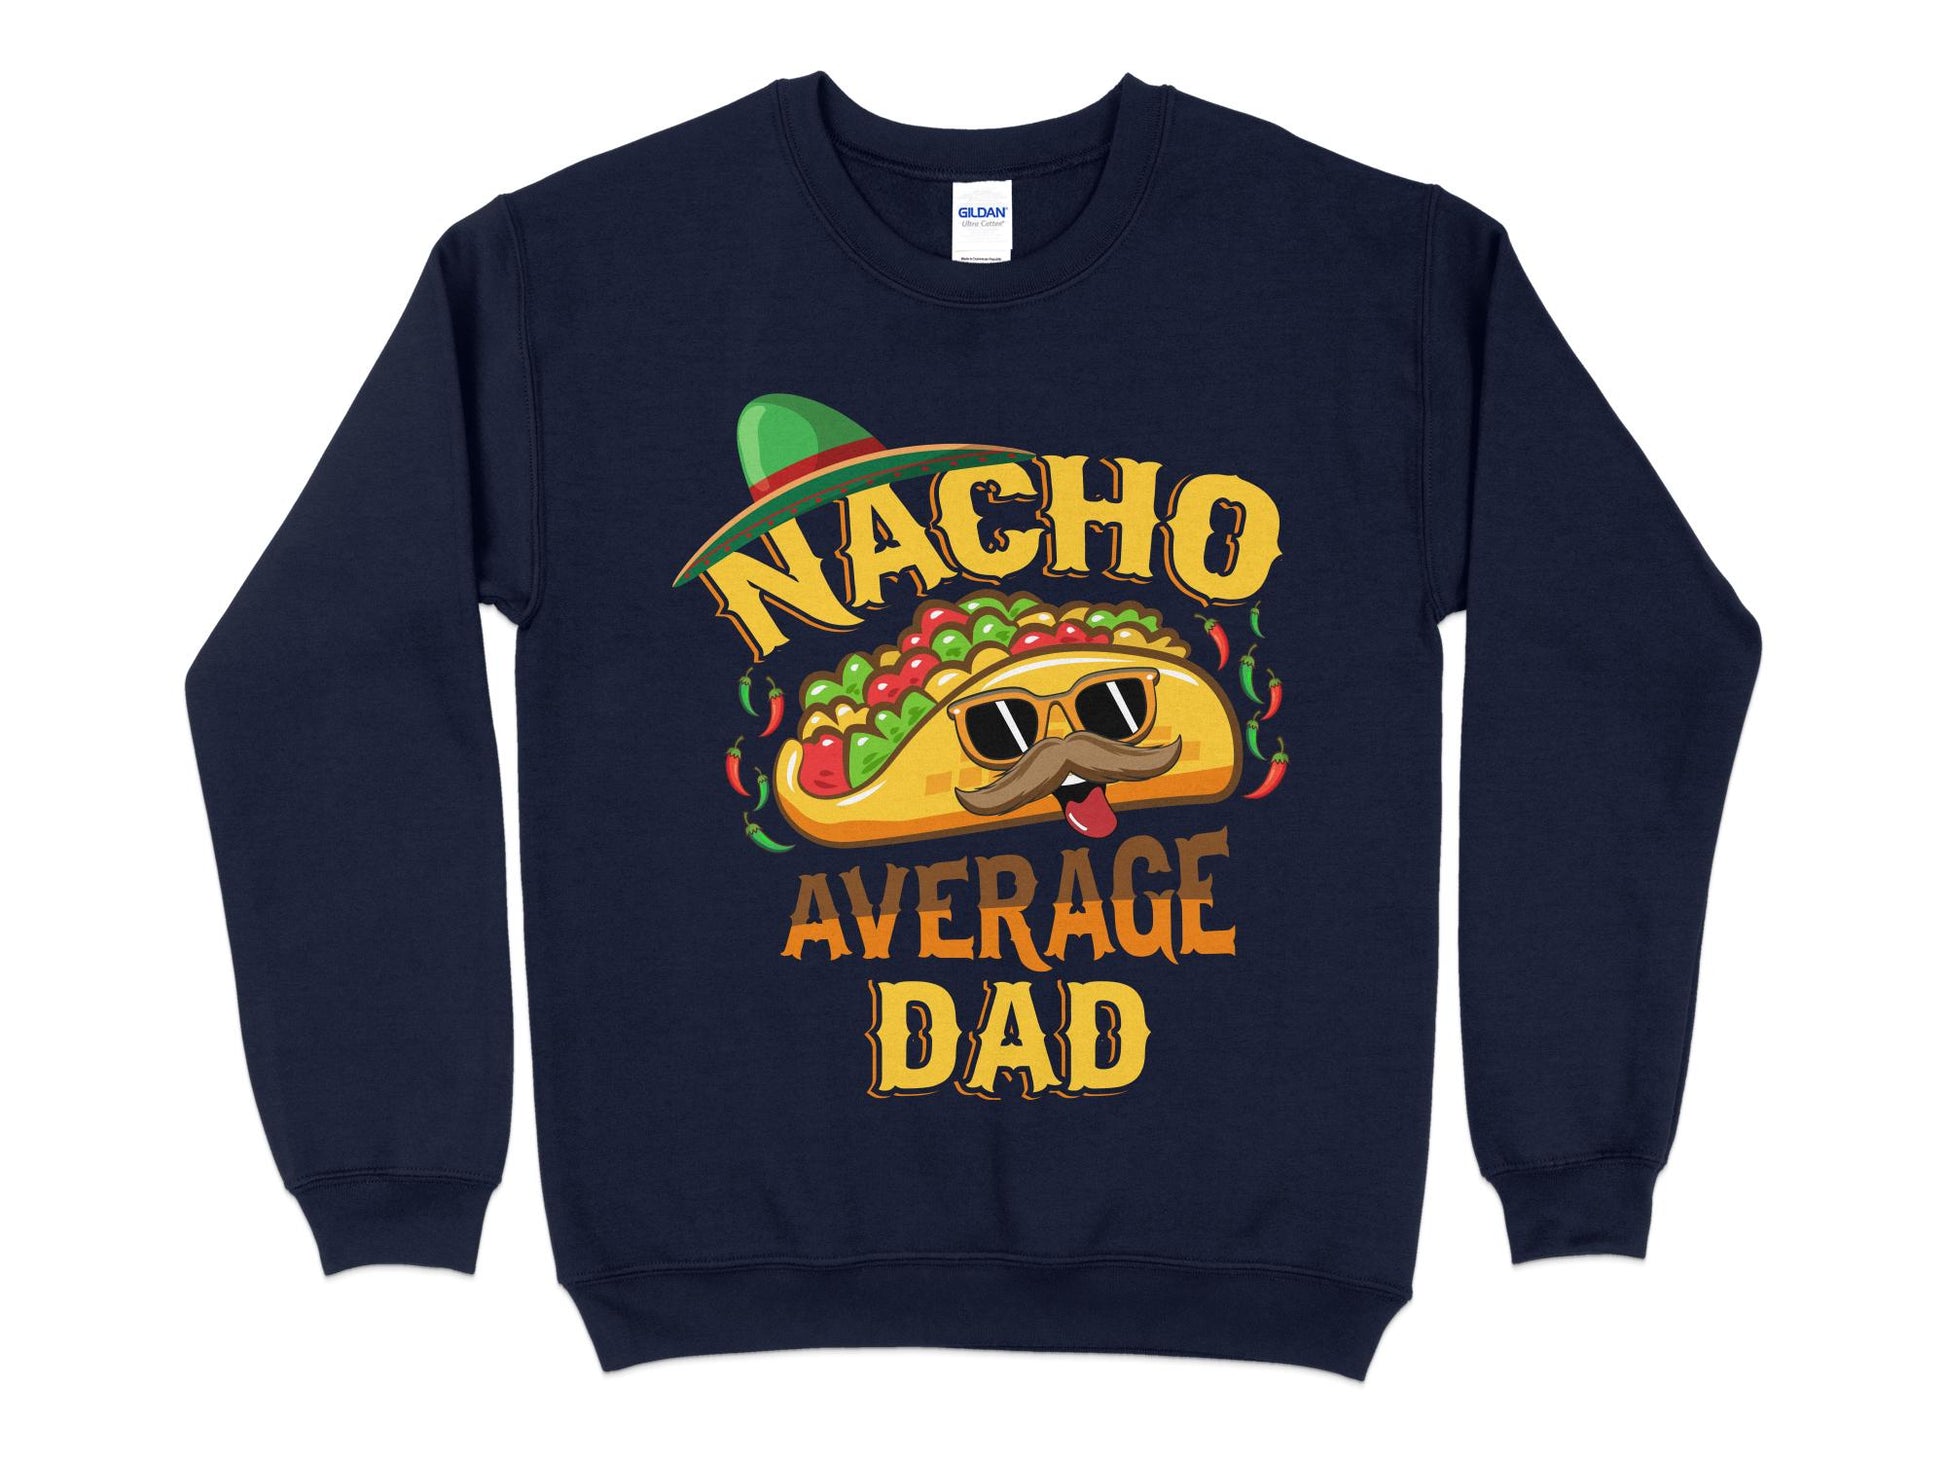 Nacho Average Dad Sweatshirt, navy blue